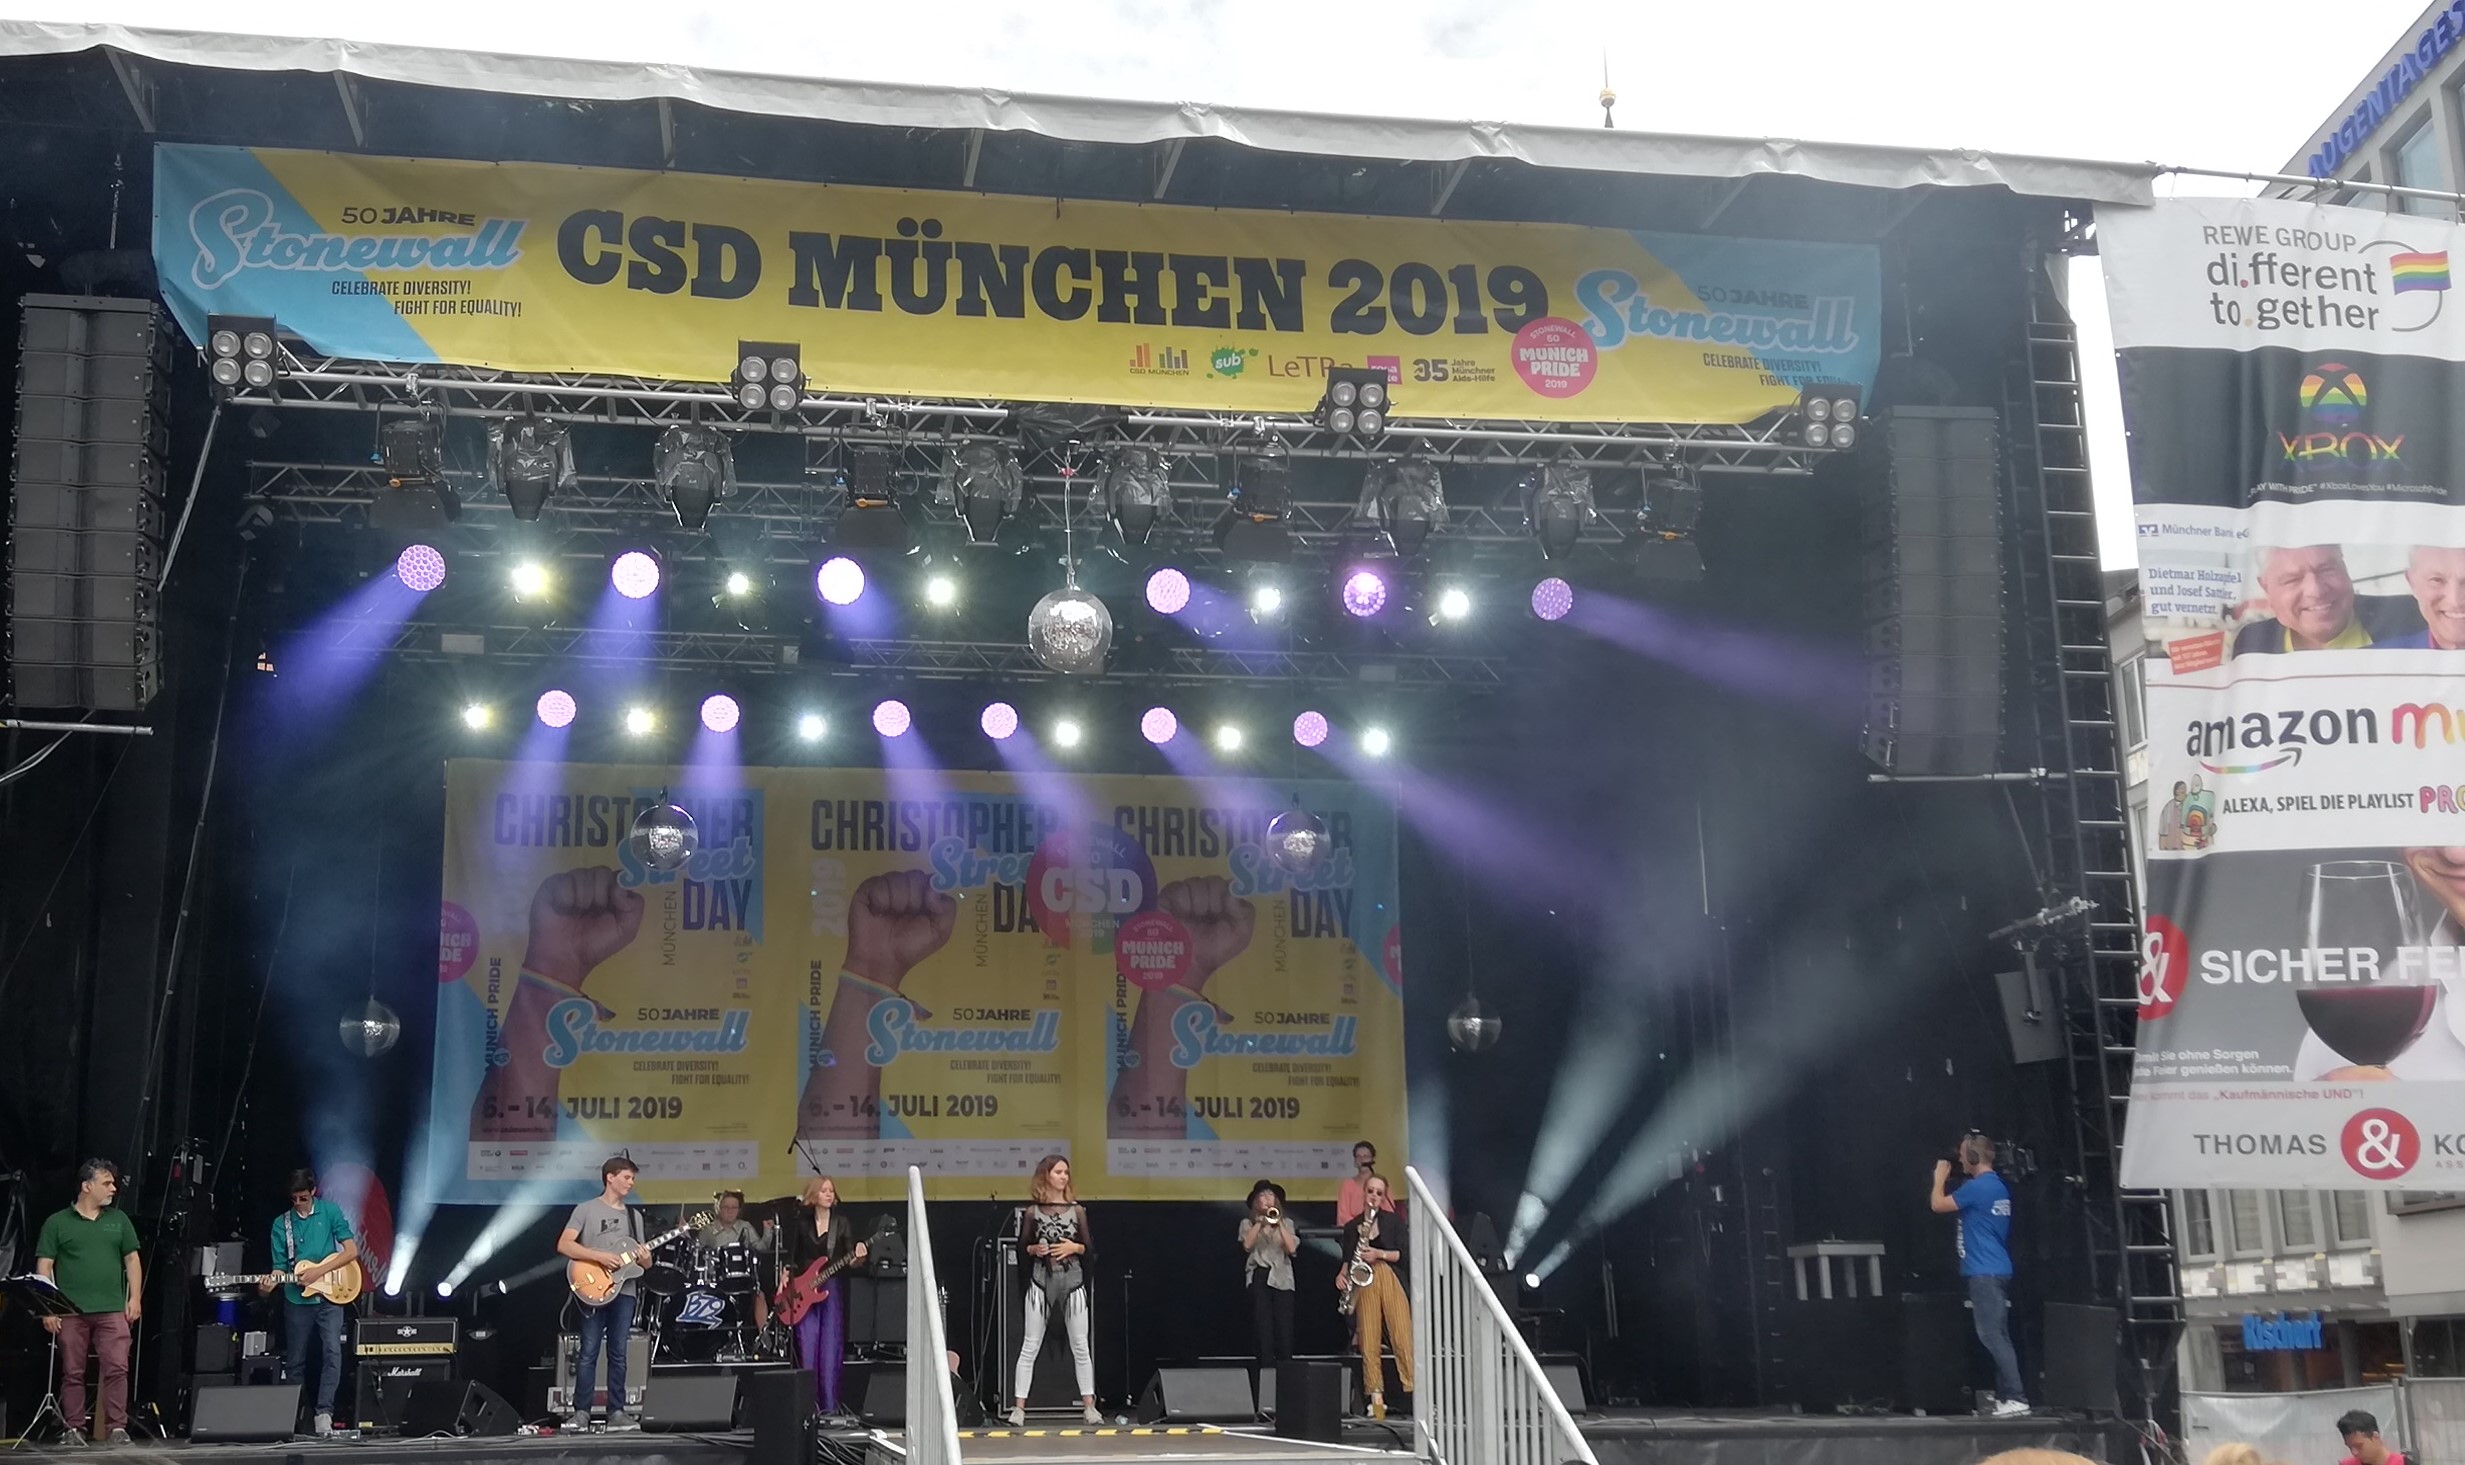 Die Band Basement79 auf der Bühne auf dem Münchener Marienplatz.